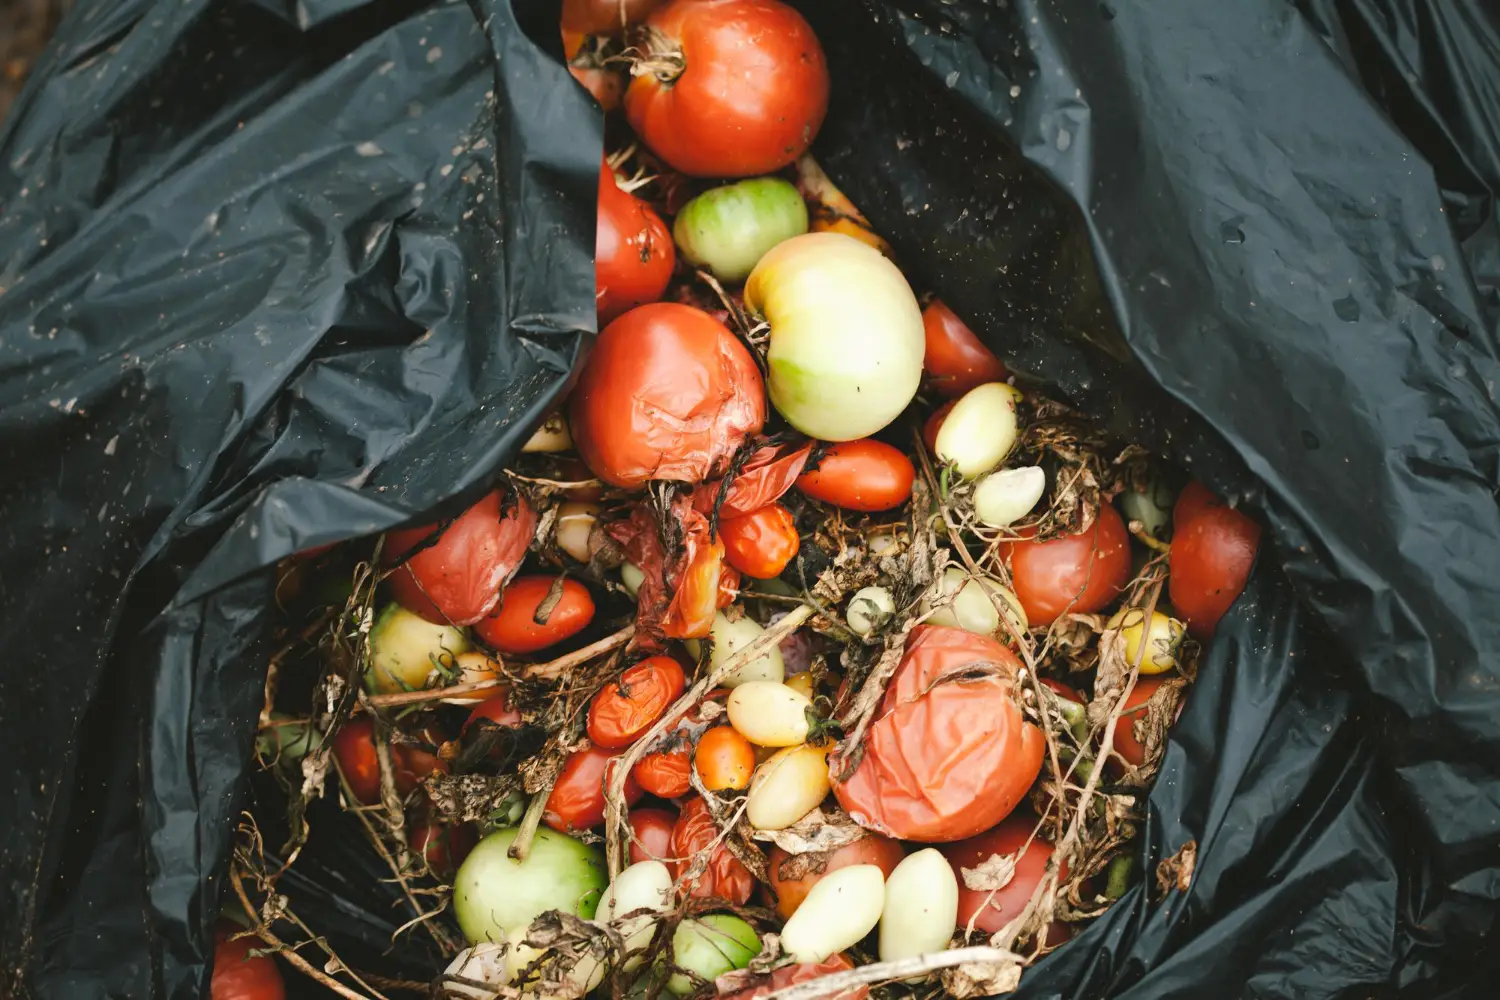 Люди выбрасывают более миллиарда тонн продуктов в год. Как снизить пищевые отходы, рассказала эксперт